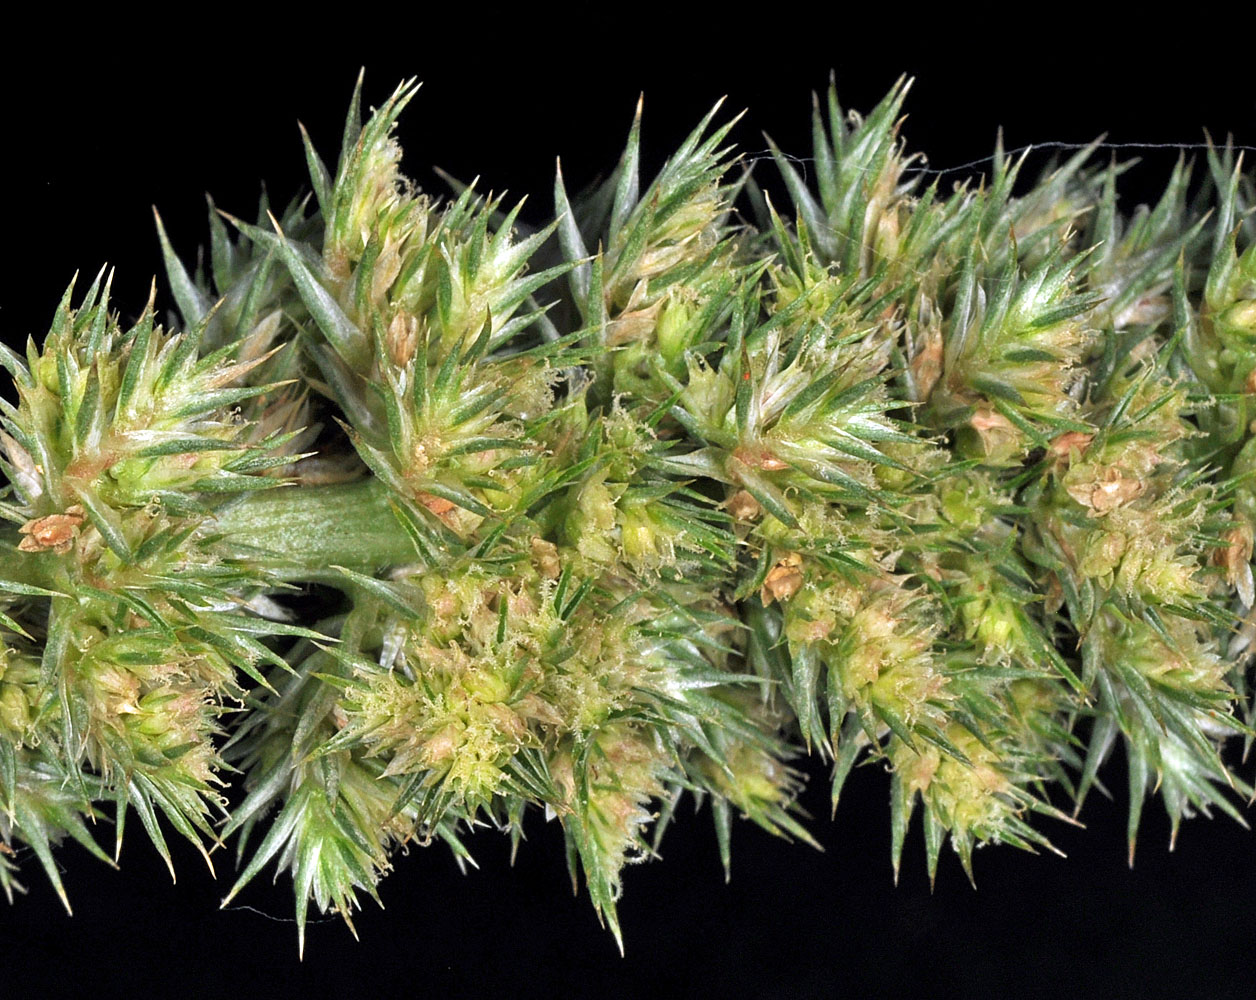 Flora of Eastern Washington Image: Amaranthus powellii